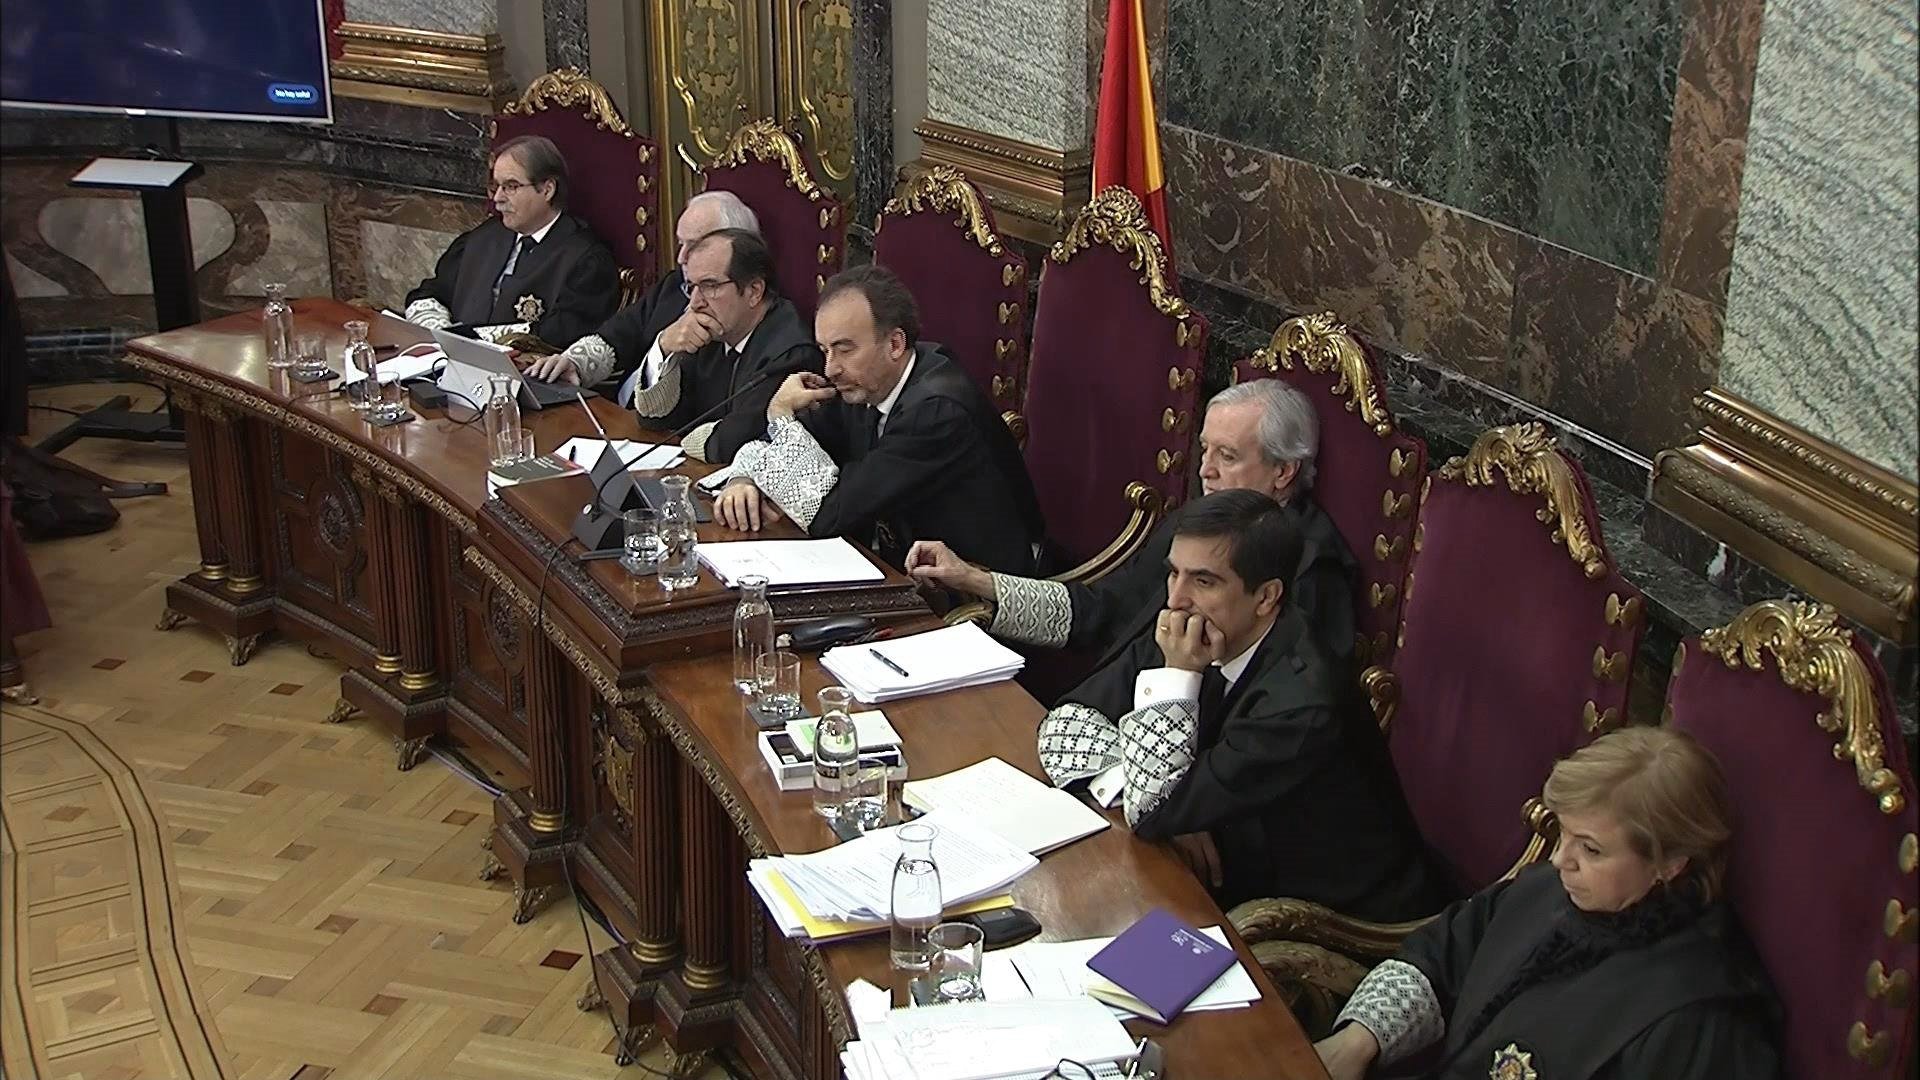 El tribunal no permite ni que los abogados pregunten en catalán ni la traducción simultánea